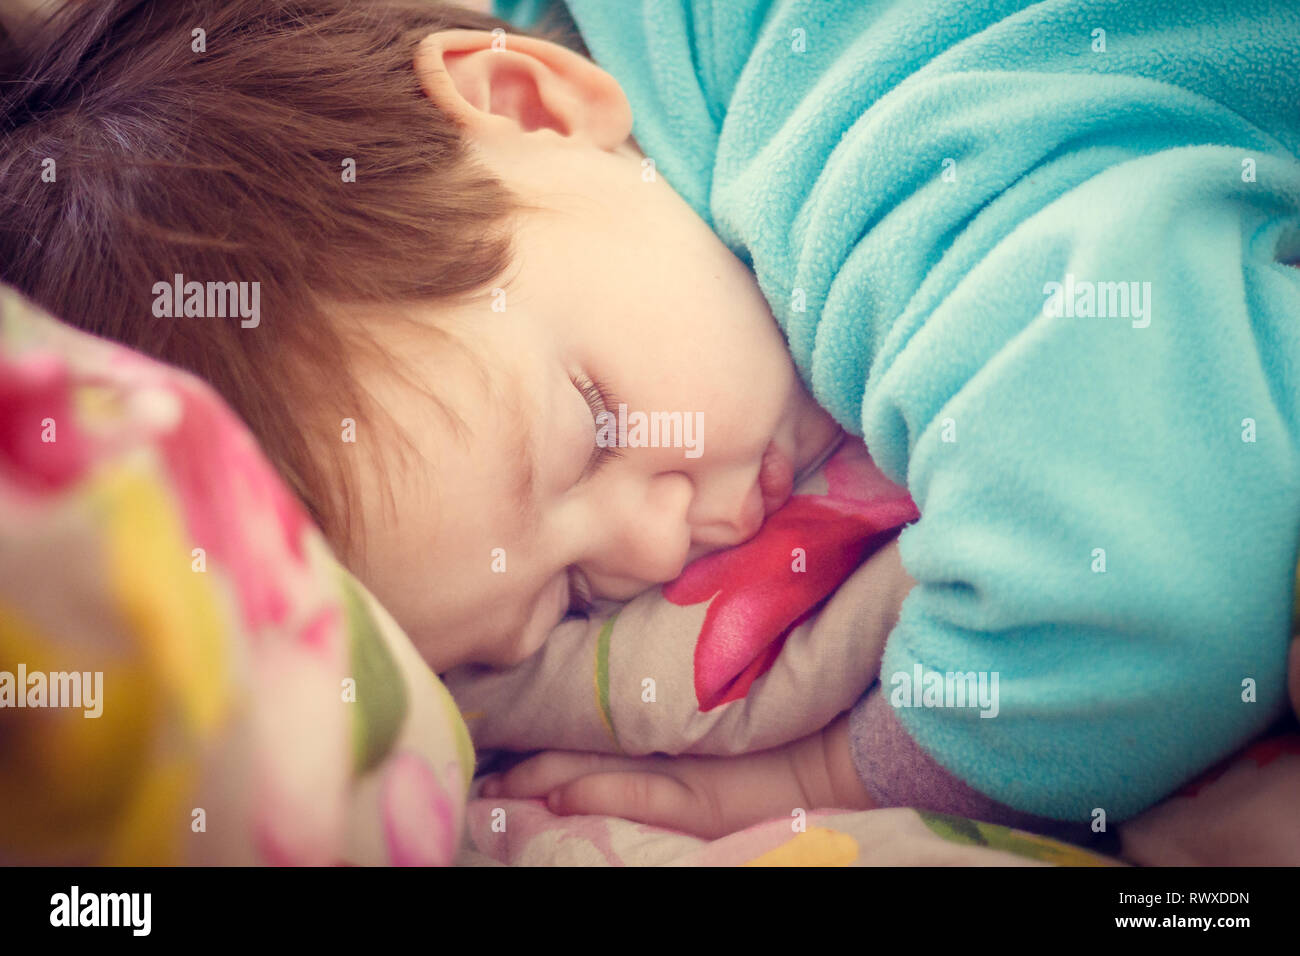 El Nino Esta Durmiendo Pequeno Bebe Esta Durmiendo Sueno Dulce Bebe Chico En Un Traje De Lana Azul Dormir Fotografia De Stock Alamy